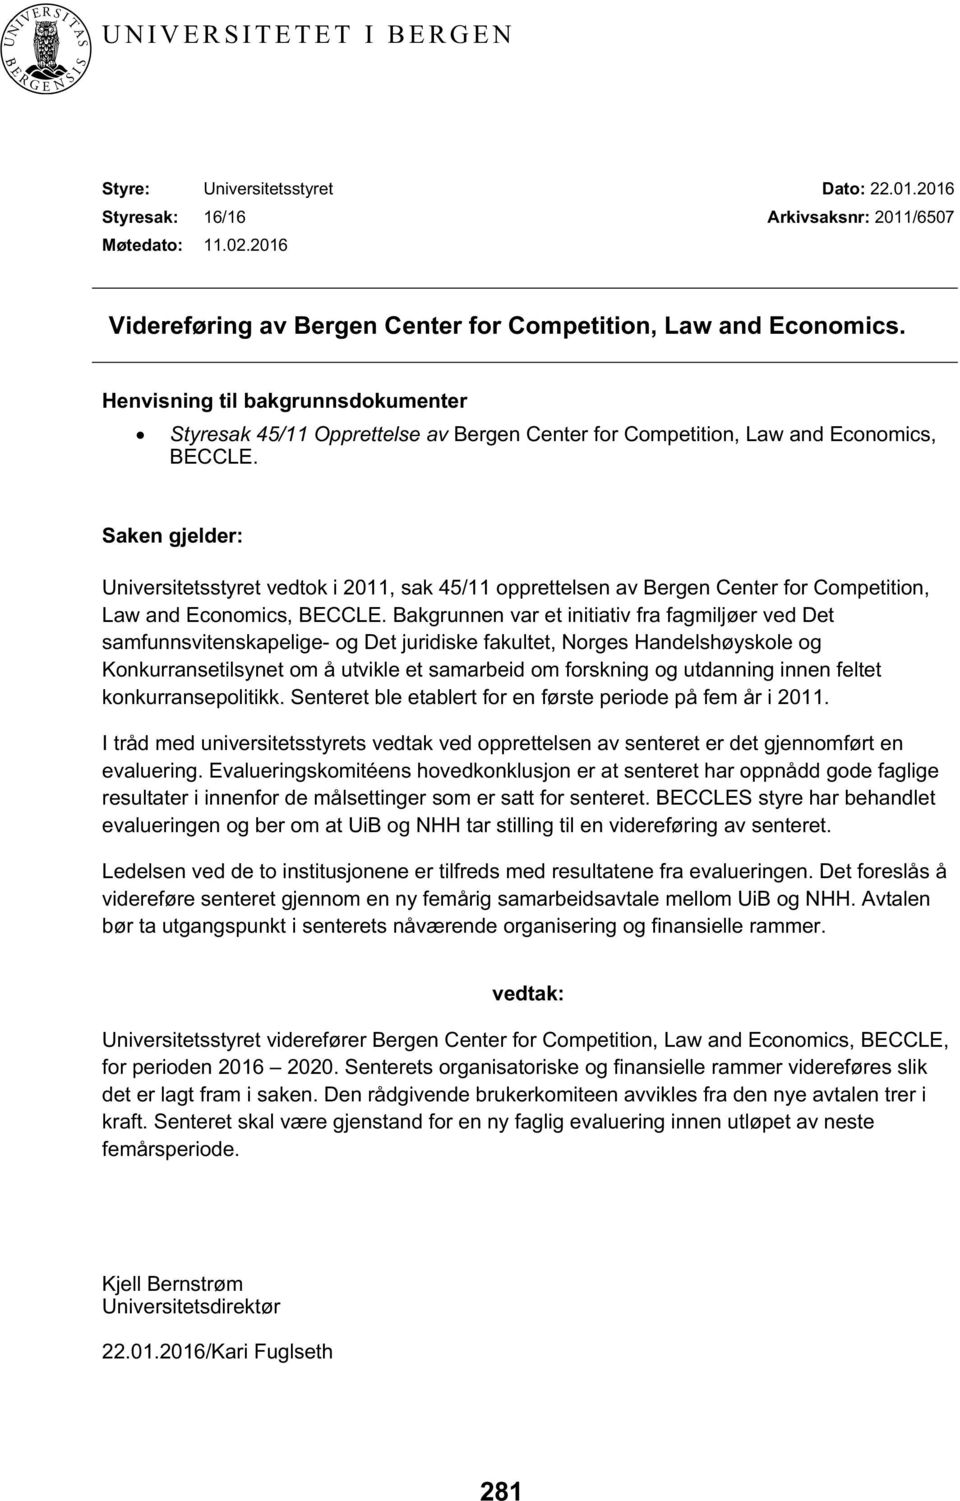 Saken gjelder: Universitetsstyret vedtok i 2011, sak 45/11 opprettelsen av Bergen Center for Competition, Law and Economics, BECCLE.